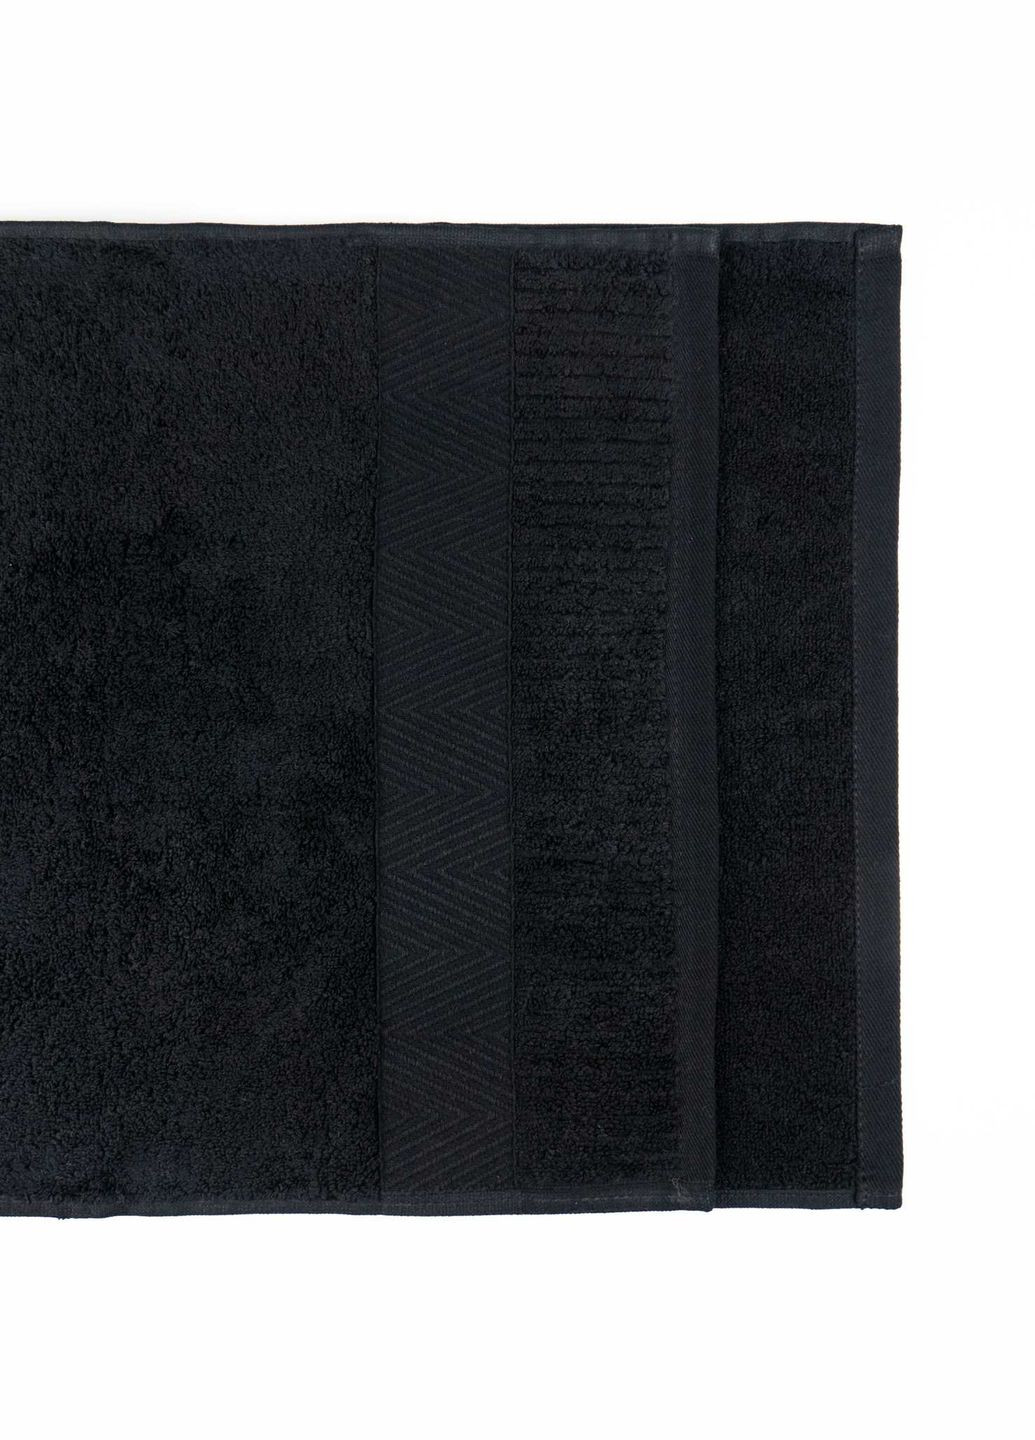 GM Textile комплект махрових рушників зеро твіст бордюр 3шт 40x70см, 50x90см, 70x140см 550г/м2 (чорний) чорний виробництво -